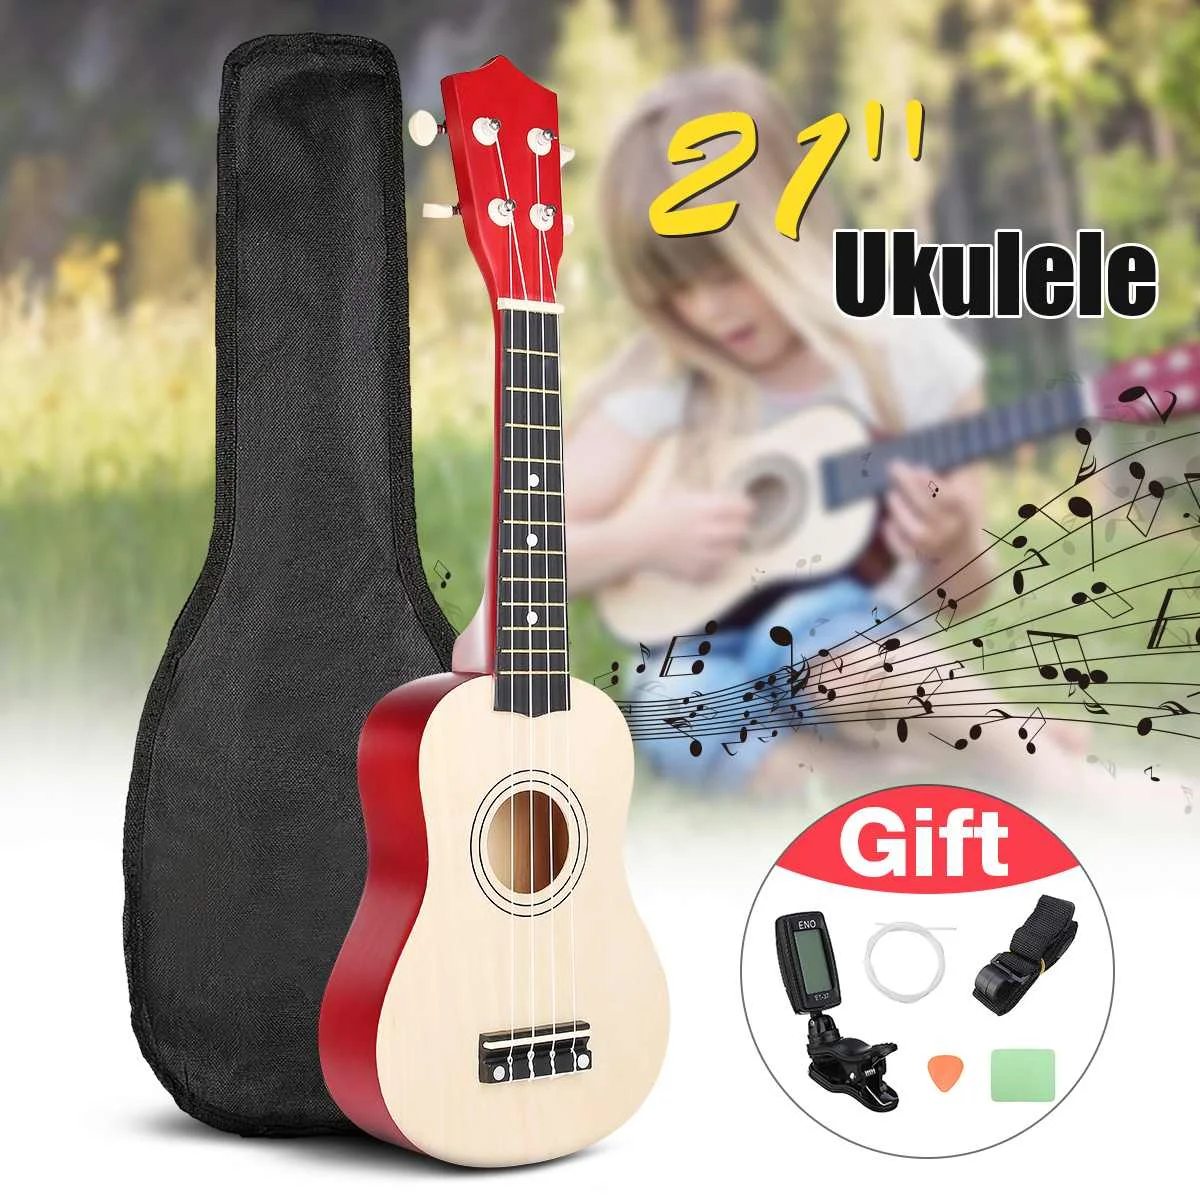 

Ukulele Combo 21 Ukulele Black Soprano 4 Strings Uke Hawaii Bass Stringed Musical Instrument Set Kits+Tuner+String+Strap+Bag